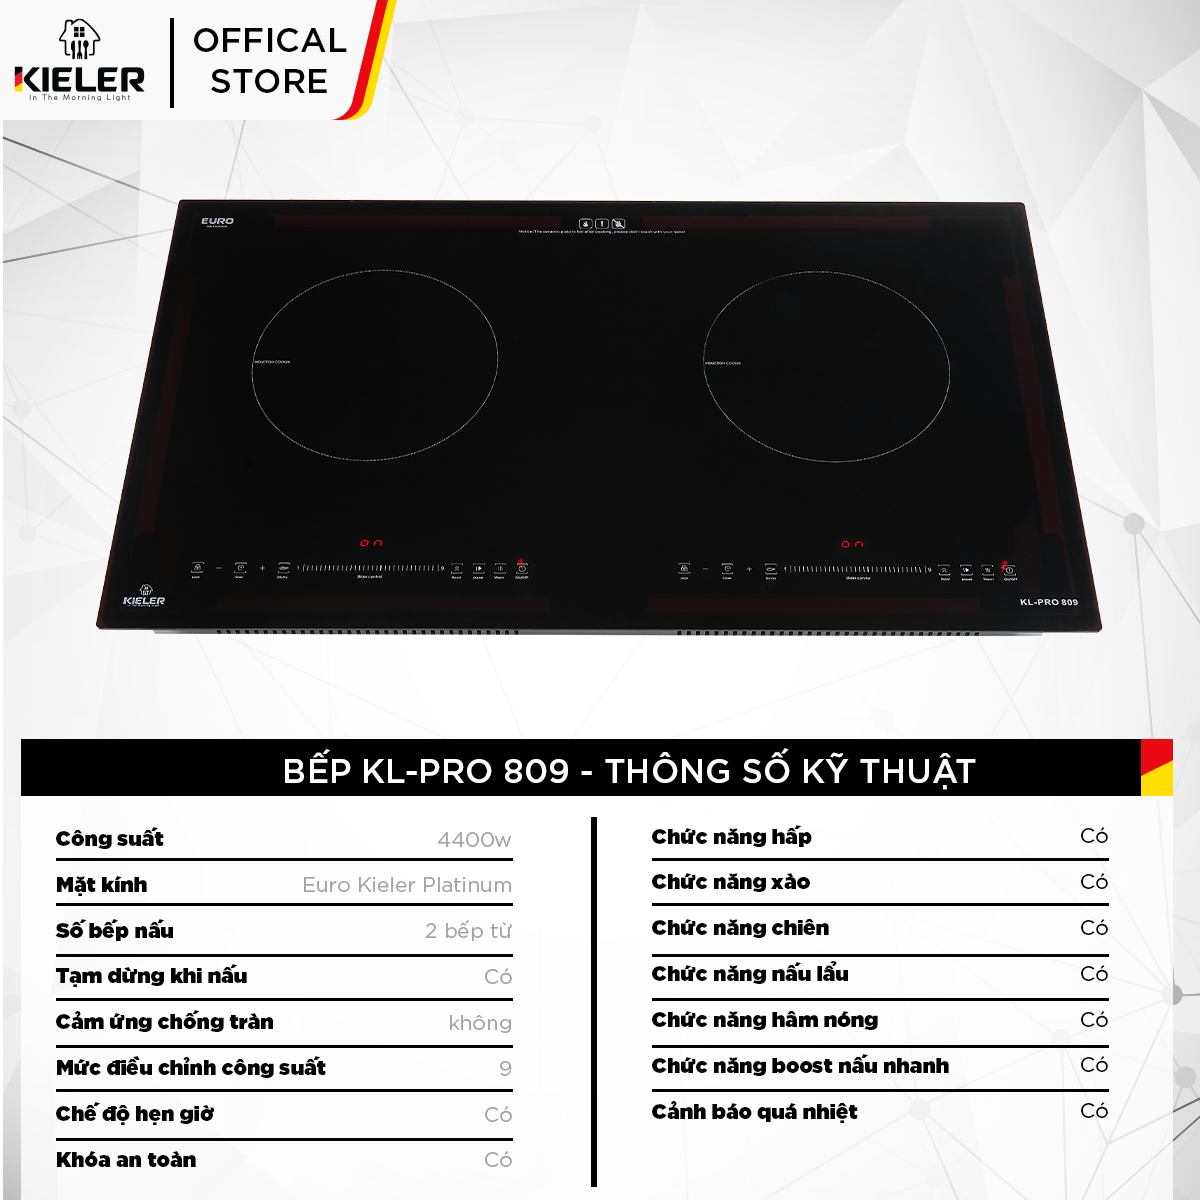 Bếp điện từ đôi Kieler KL-PRO809 mặt kính Euro Kieler Platinum, Bếp điện từ có chế độ cảm ứng chống tràn 4400W - Hàng Chính Hãng